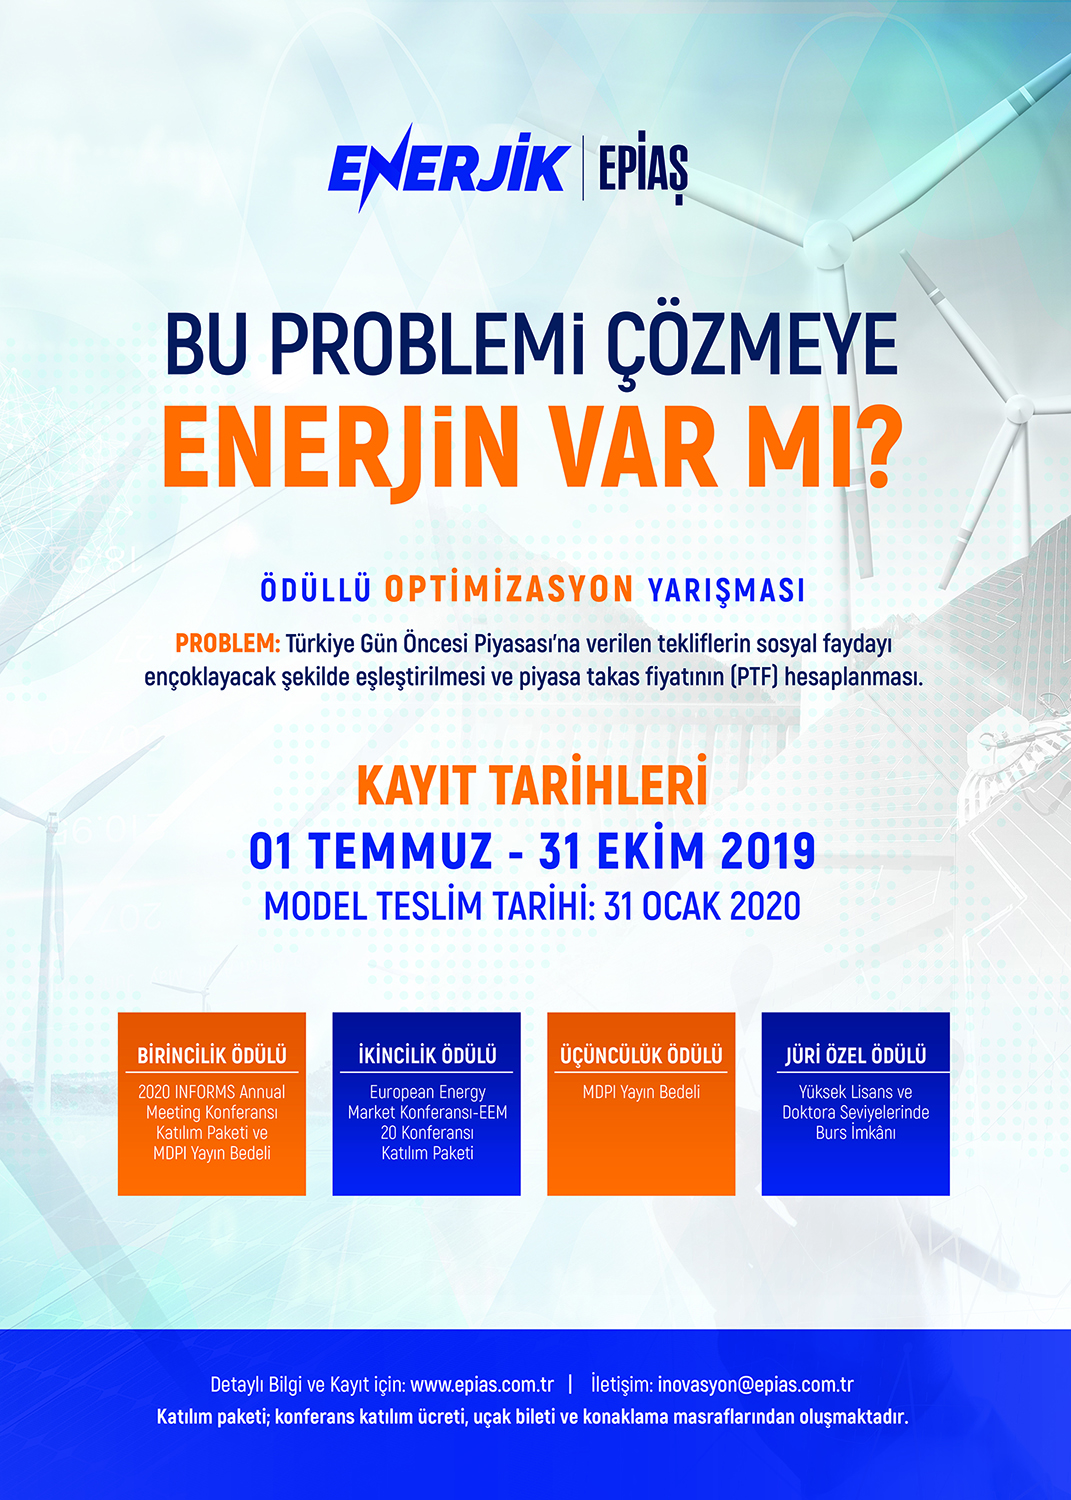 EPİAŞ Enerjik tarafından GÖP Ödüllü Optimizasyon Yarışması